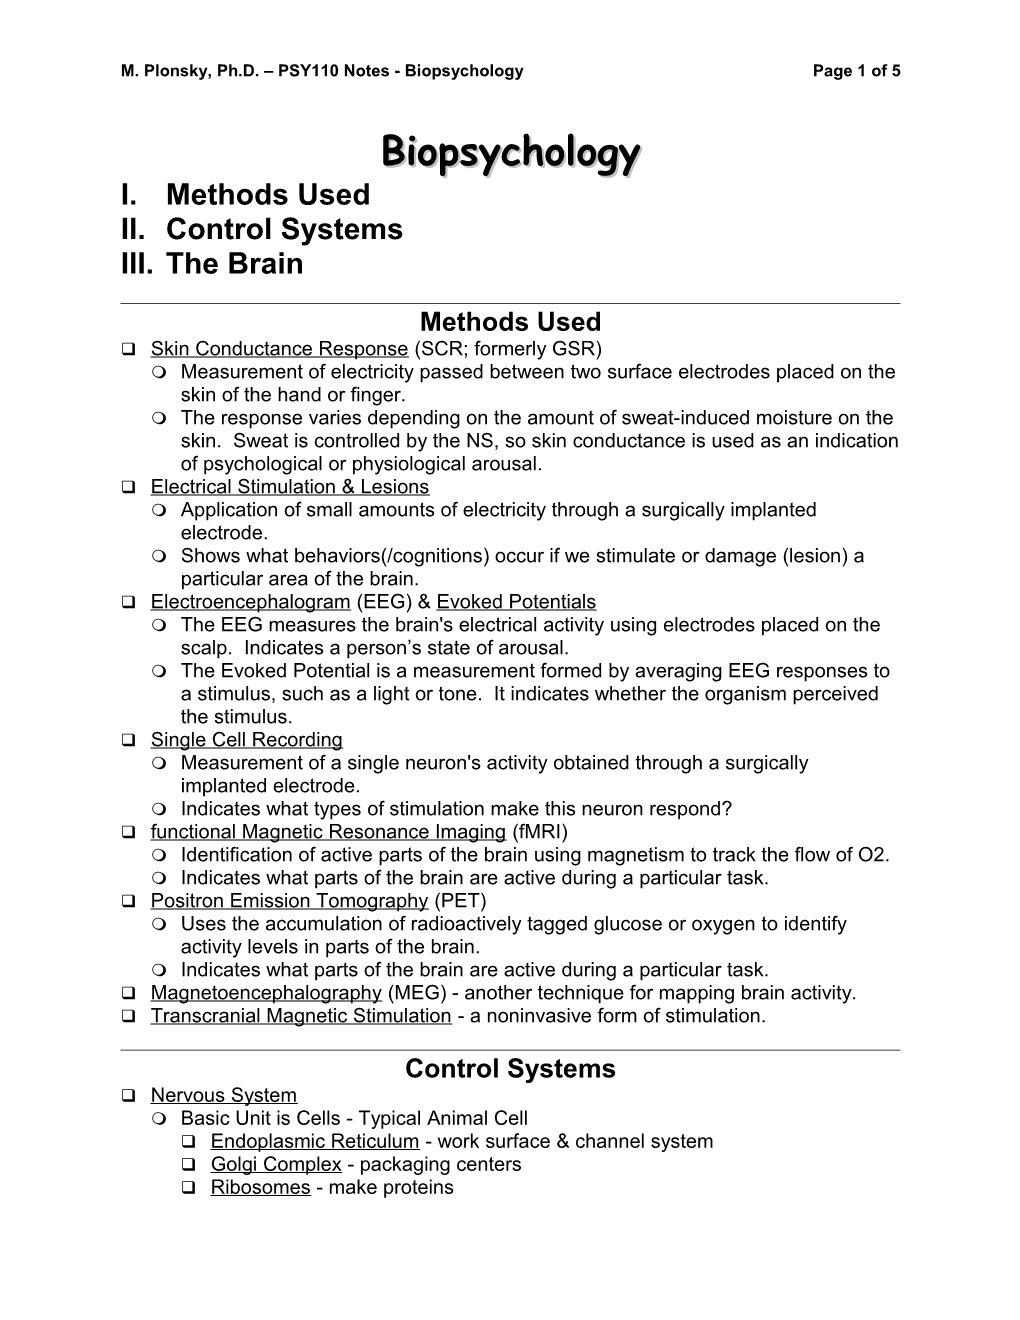 M. Plonsky, Ph.D. PSY110 Notes - Biopsychologypage 1 of 5